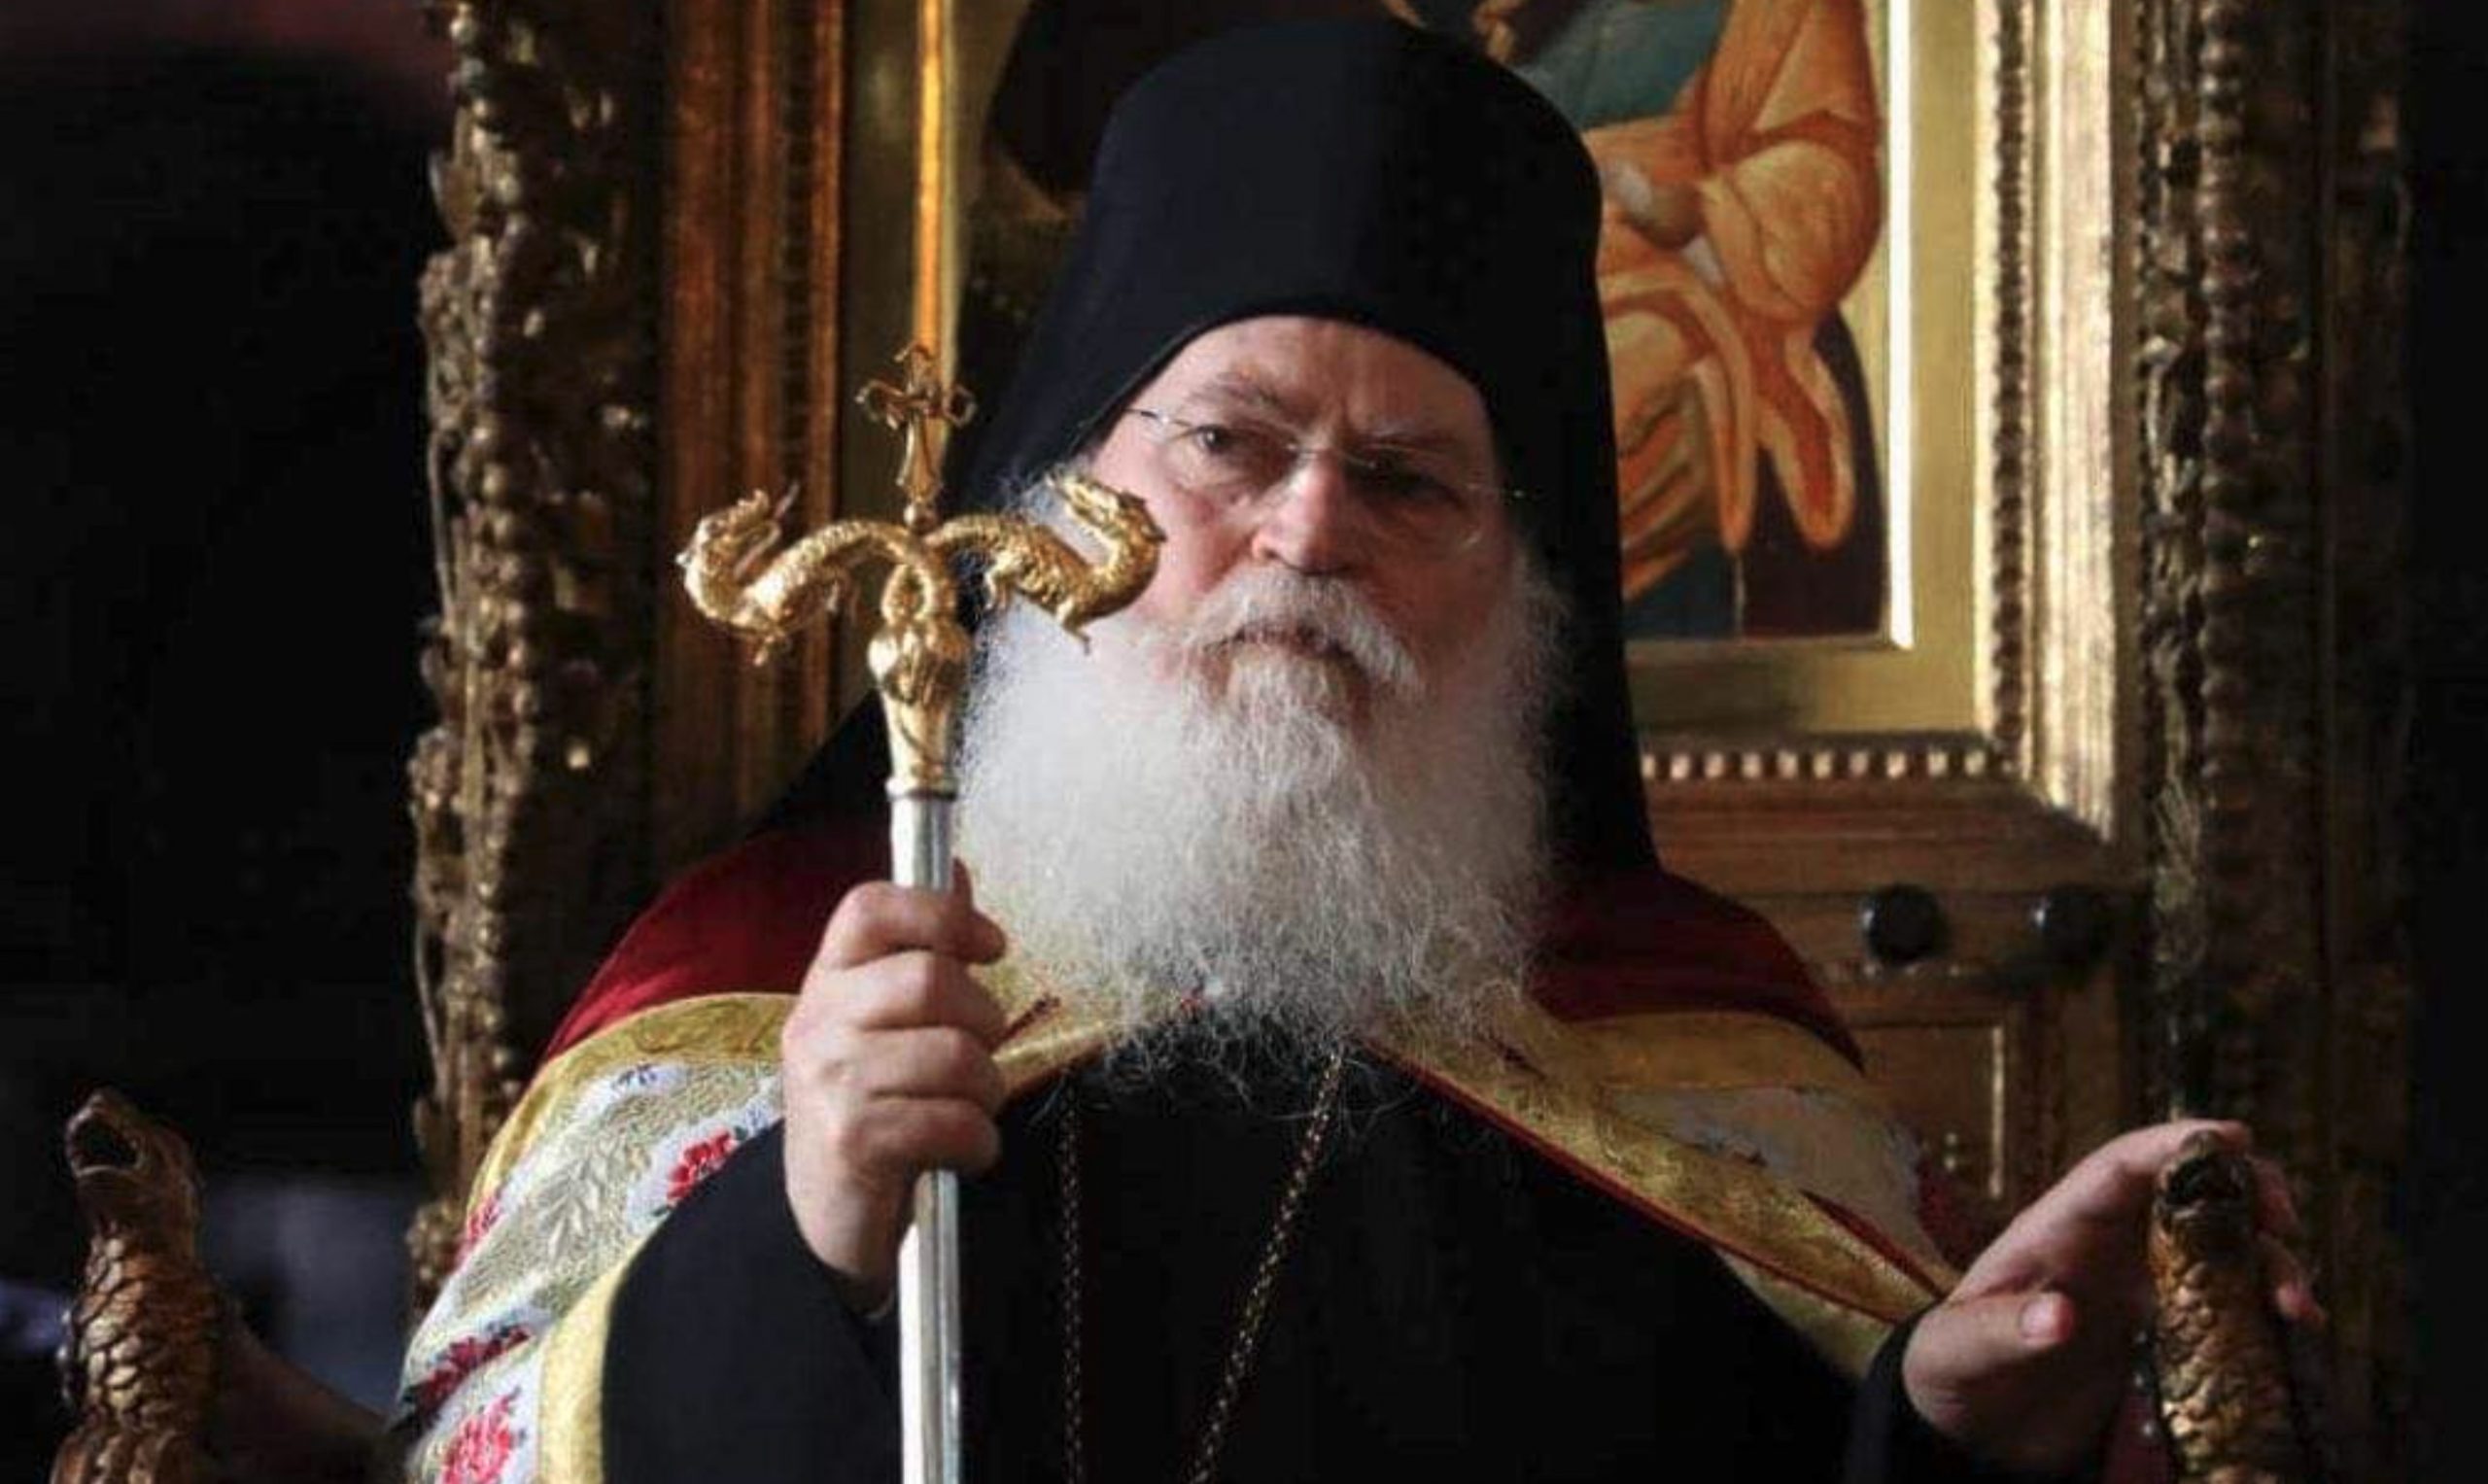 L’état de santé de l’archimandrite Éphrem de Vatopédi est stable et sans détérioration